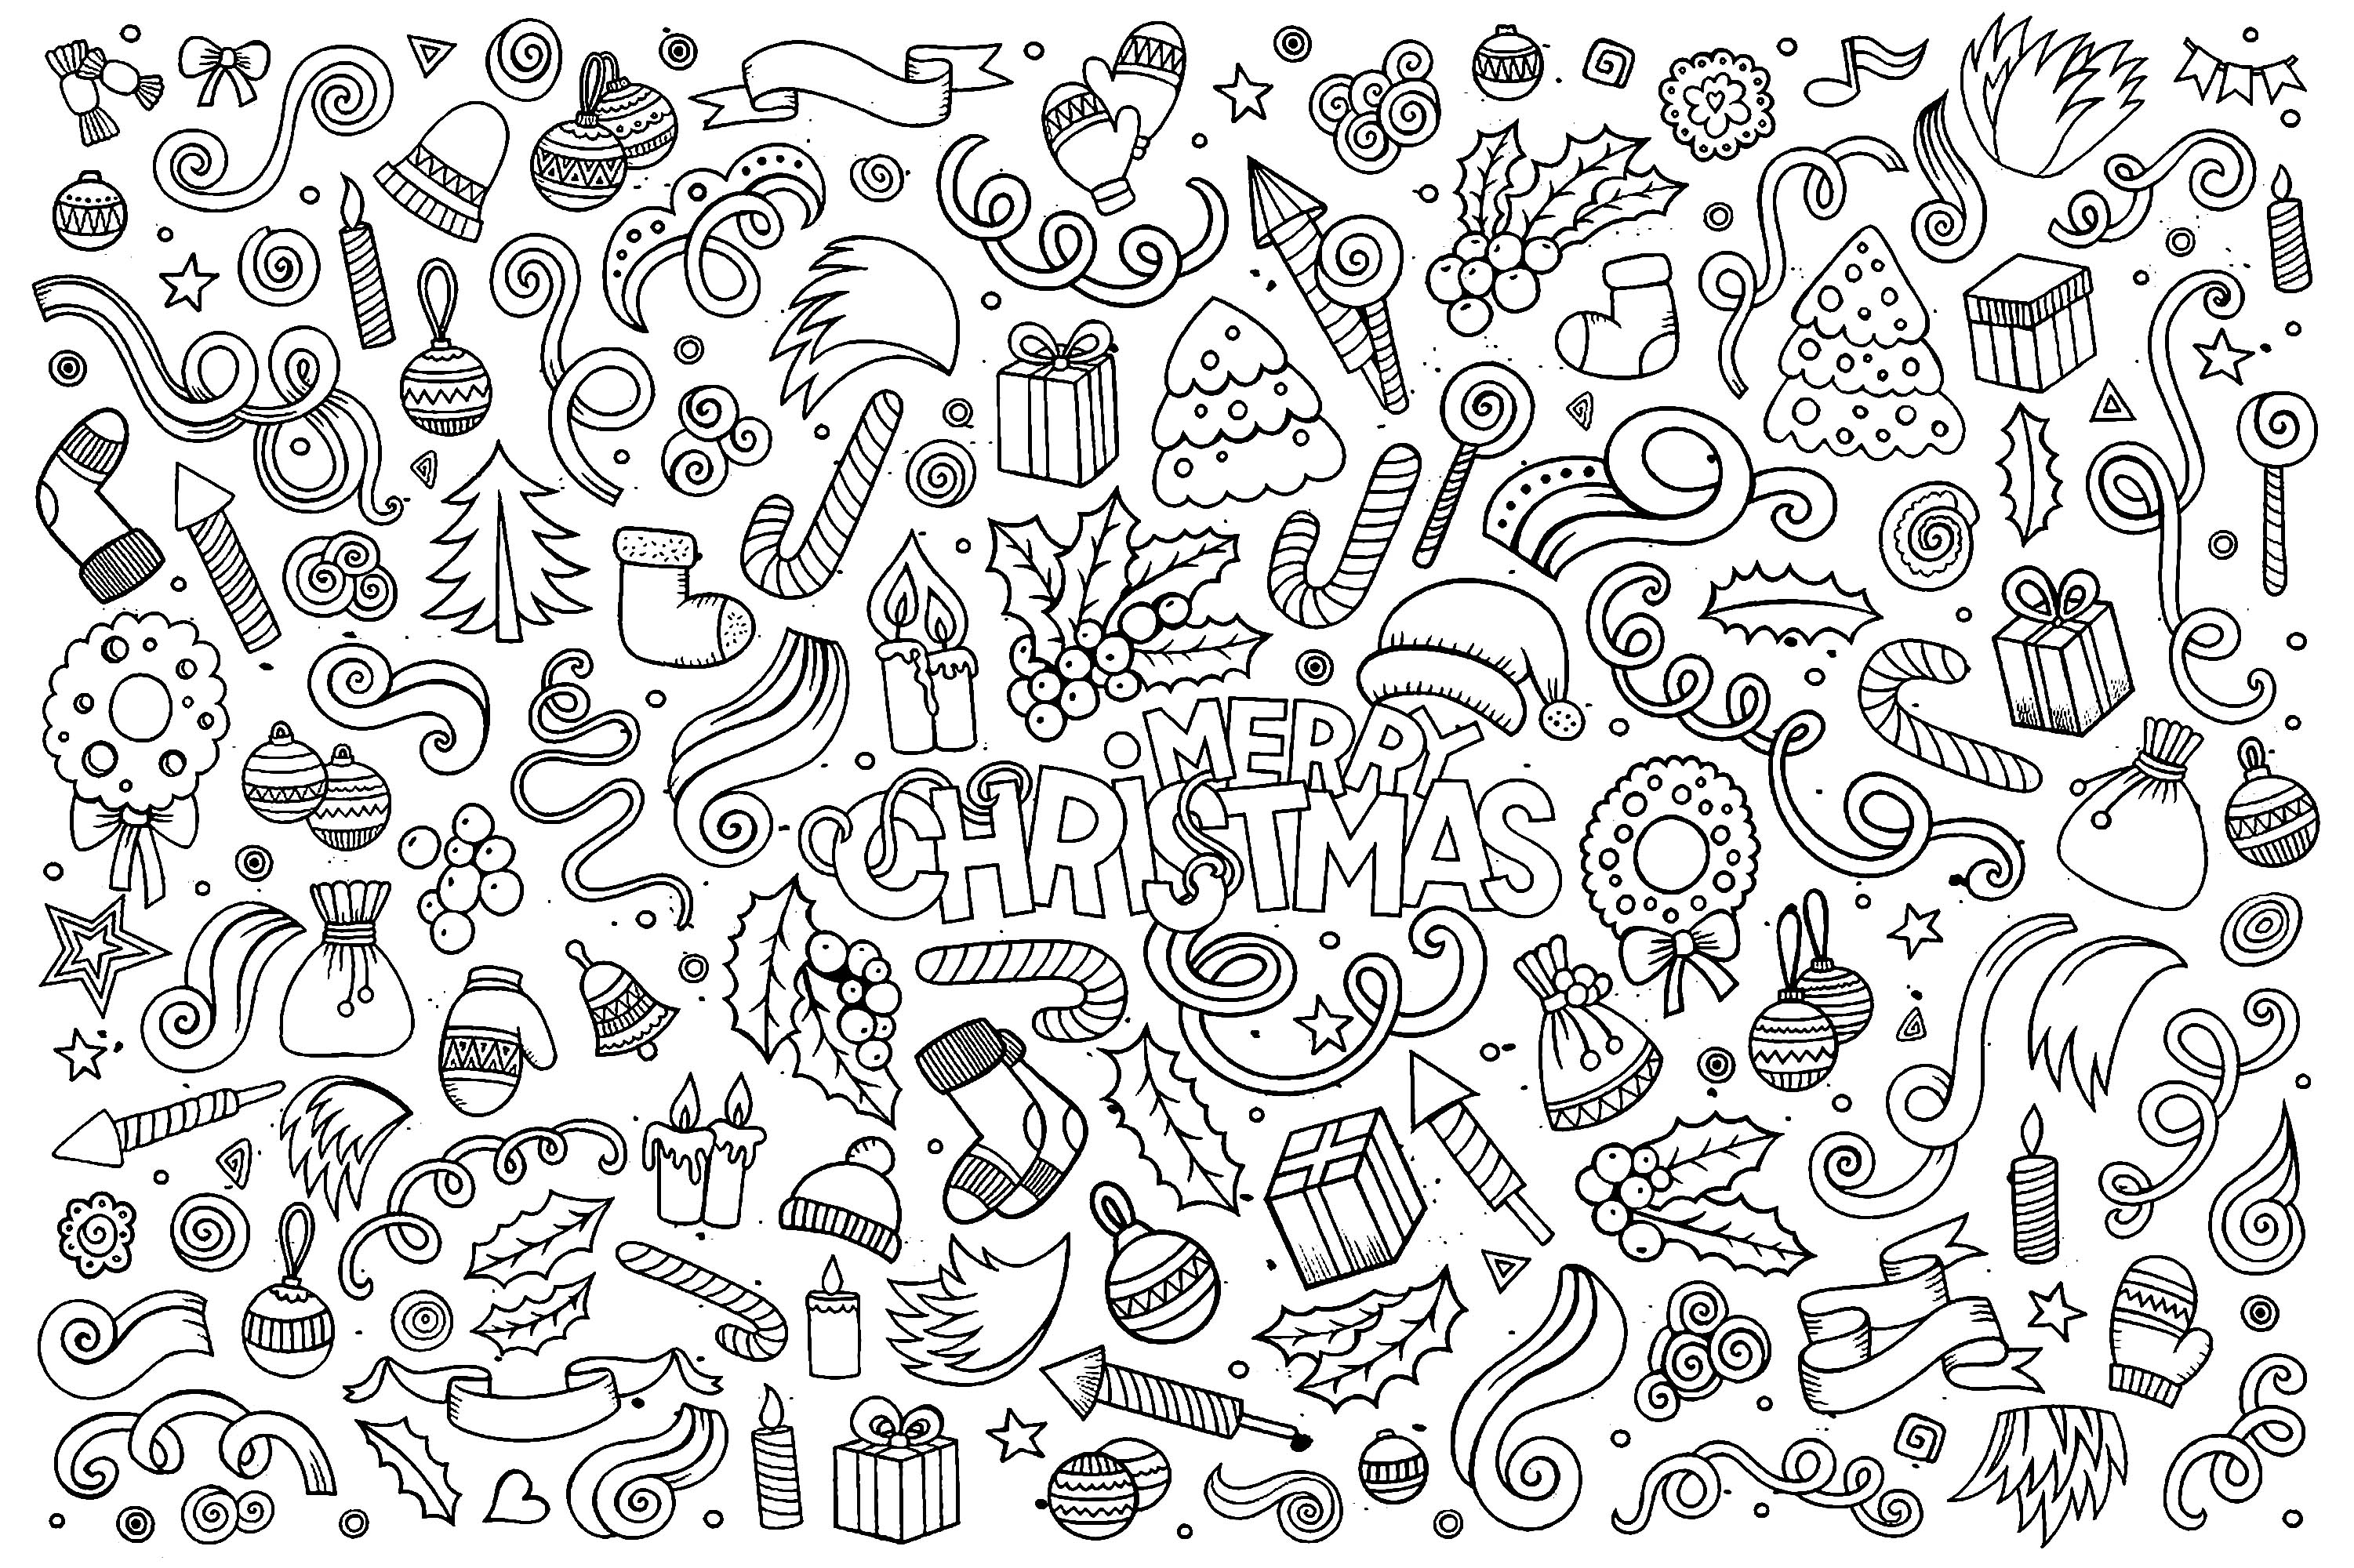 Desenhos simples para colorir de Natal, Fonte : 123rf   Artista : Olga Kostenko